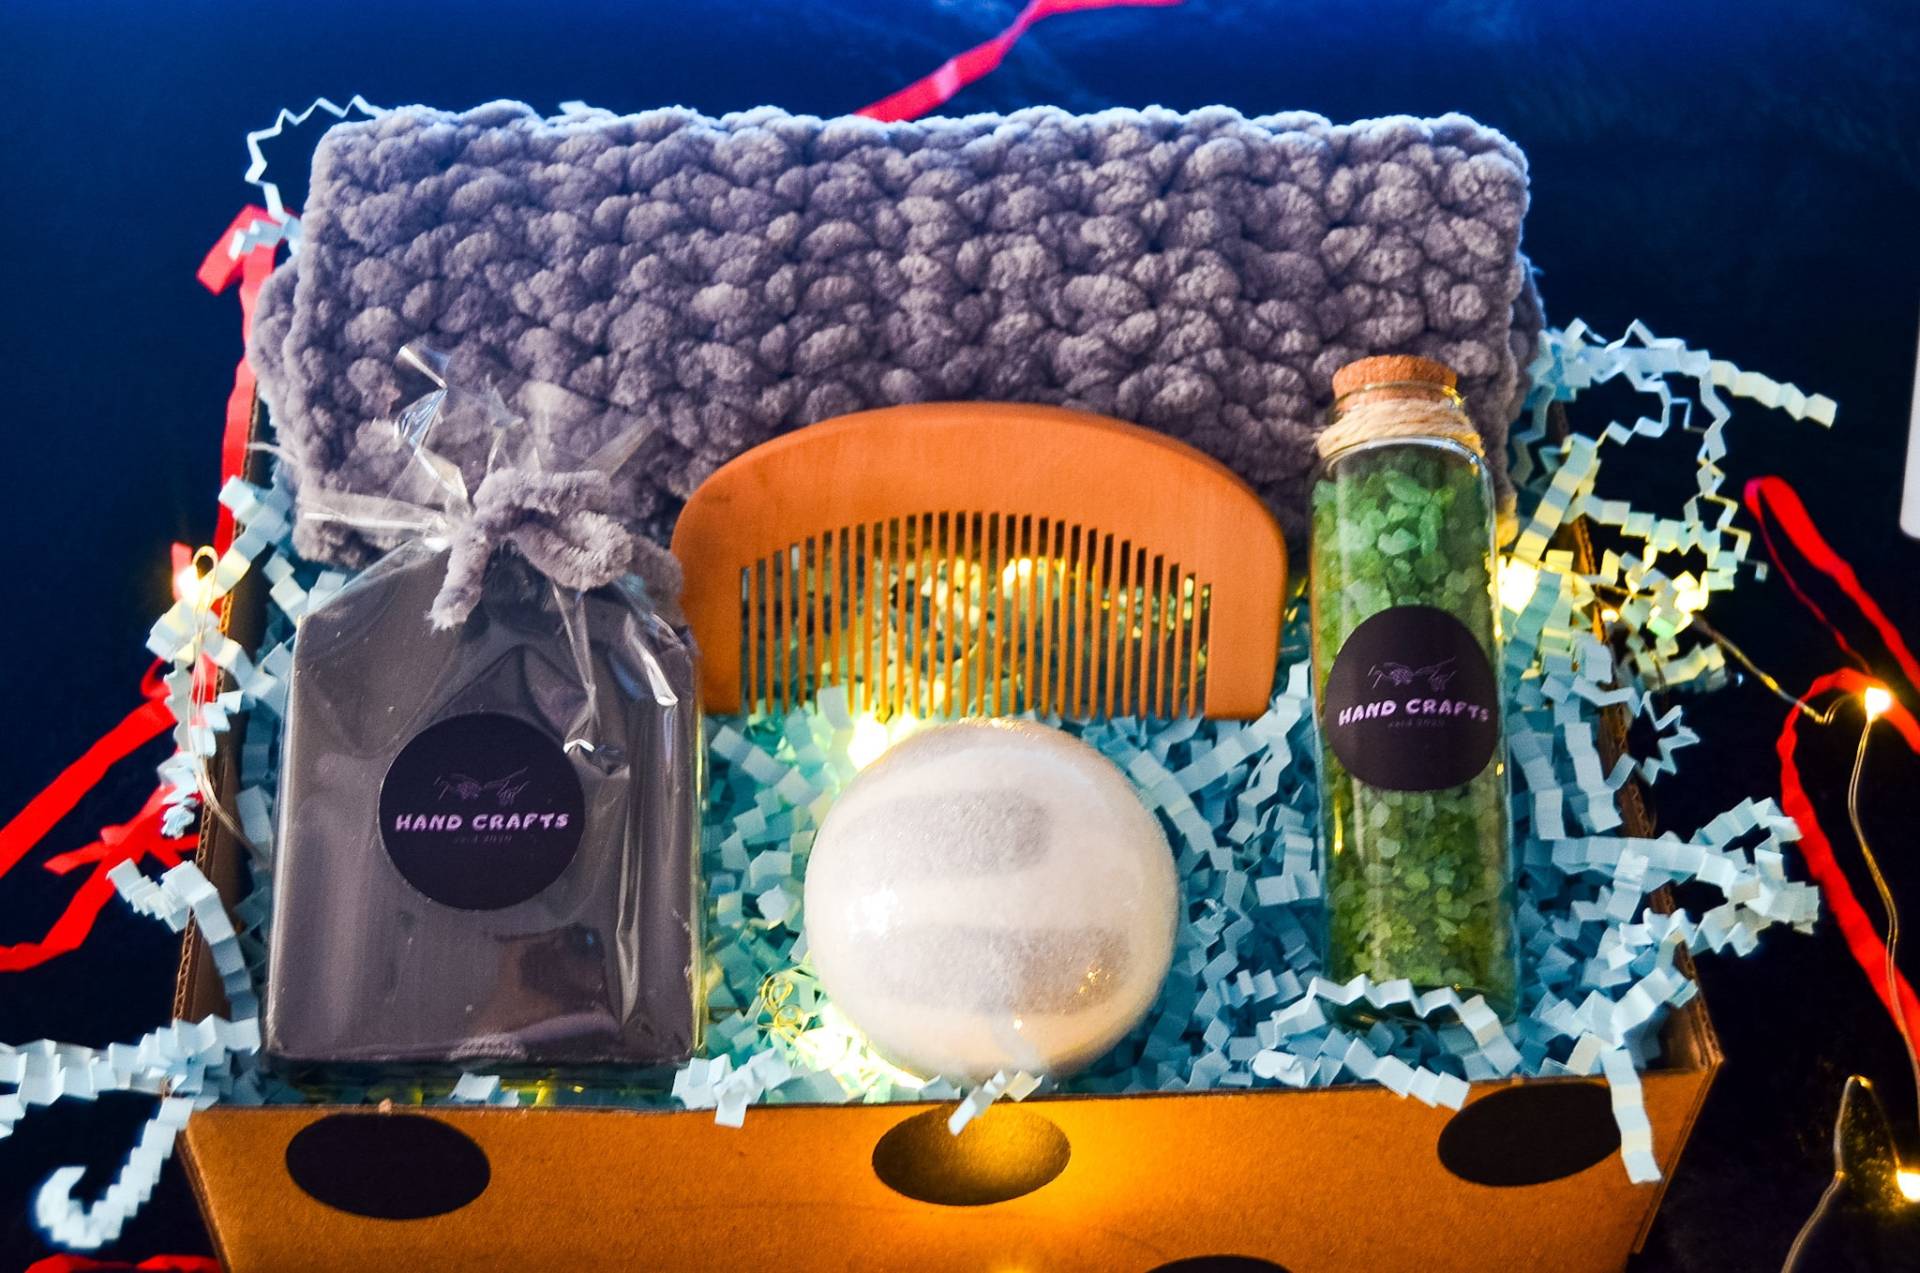 Spa-Geschenk Für Männer, Spa-Geschenkkorb Self-Care-Paket Ihn, Weihnachtsgeschenkbox Männer von AnatoliasH4ndCrafts